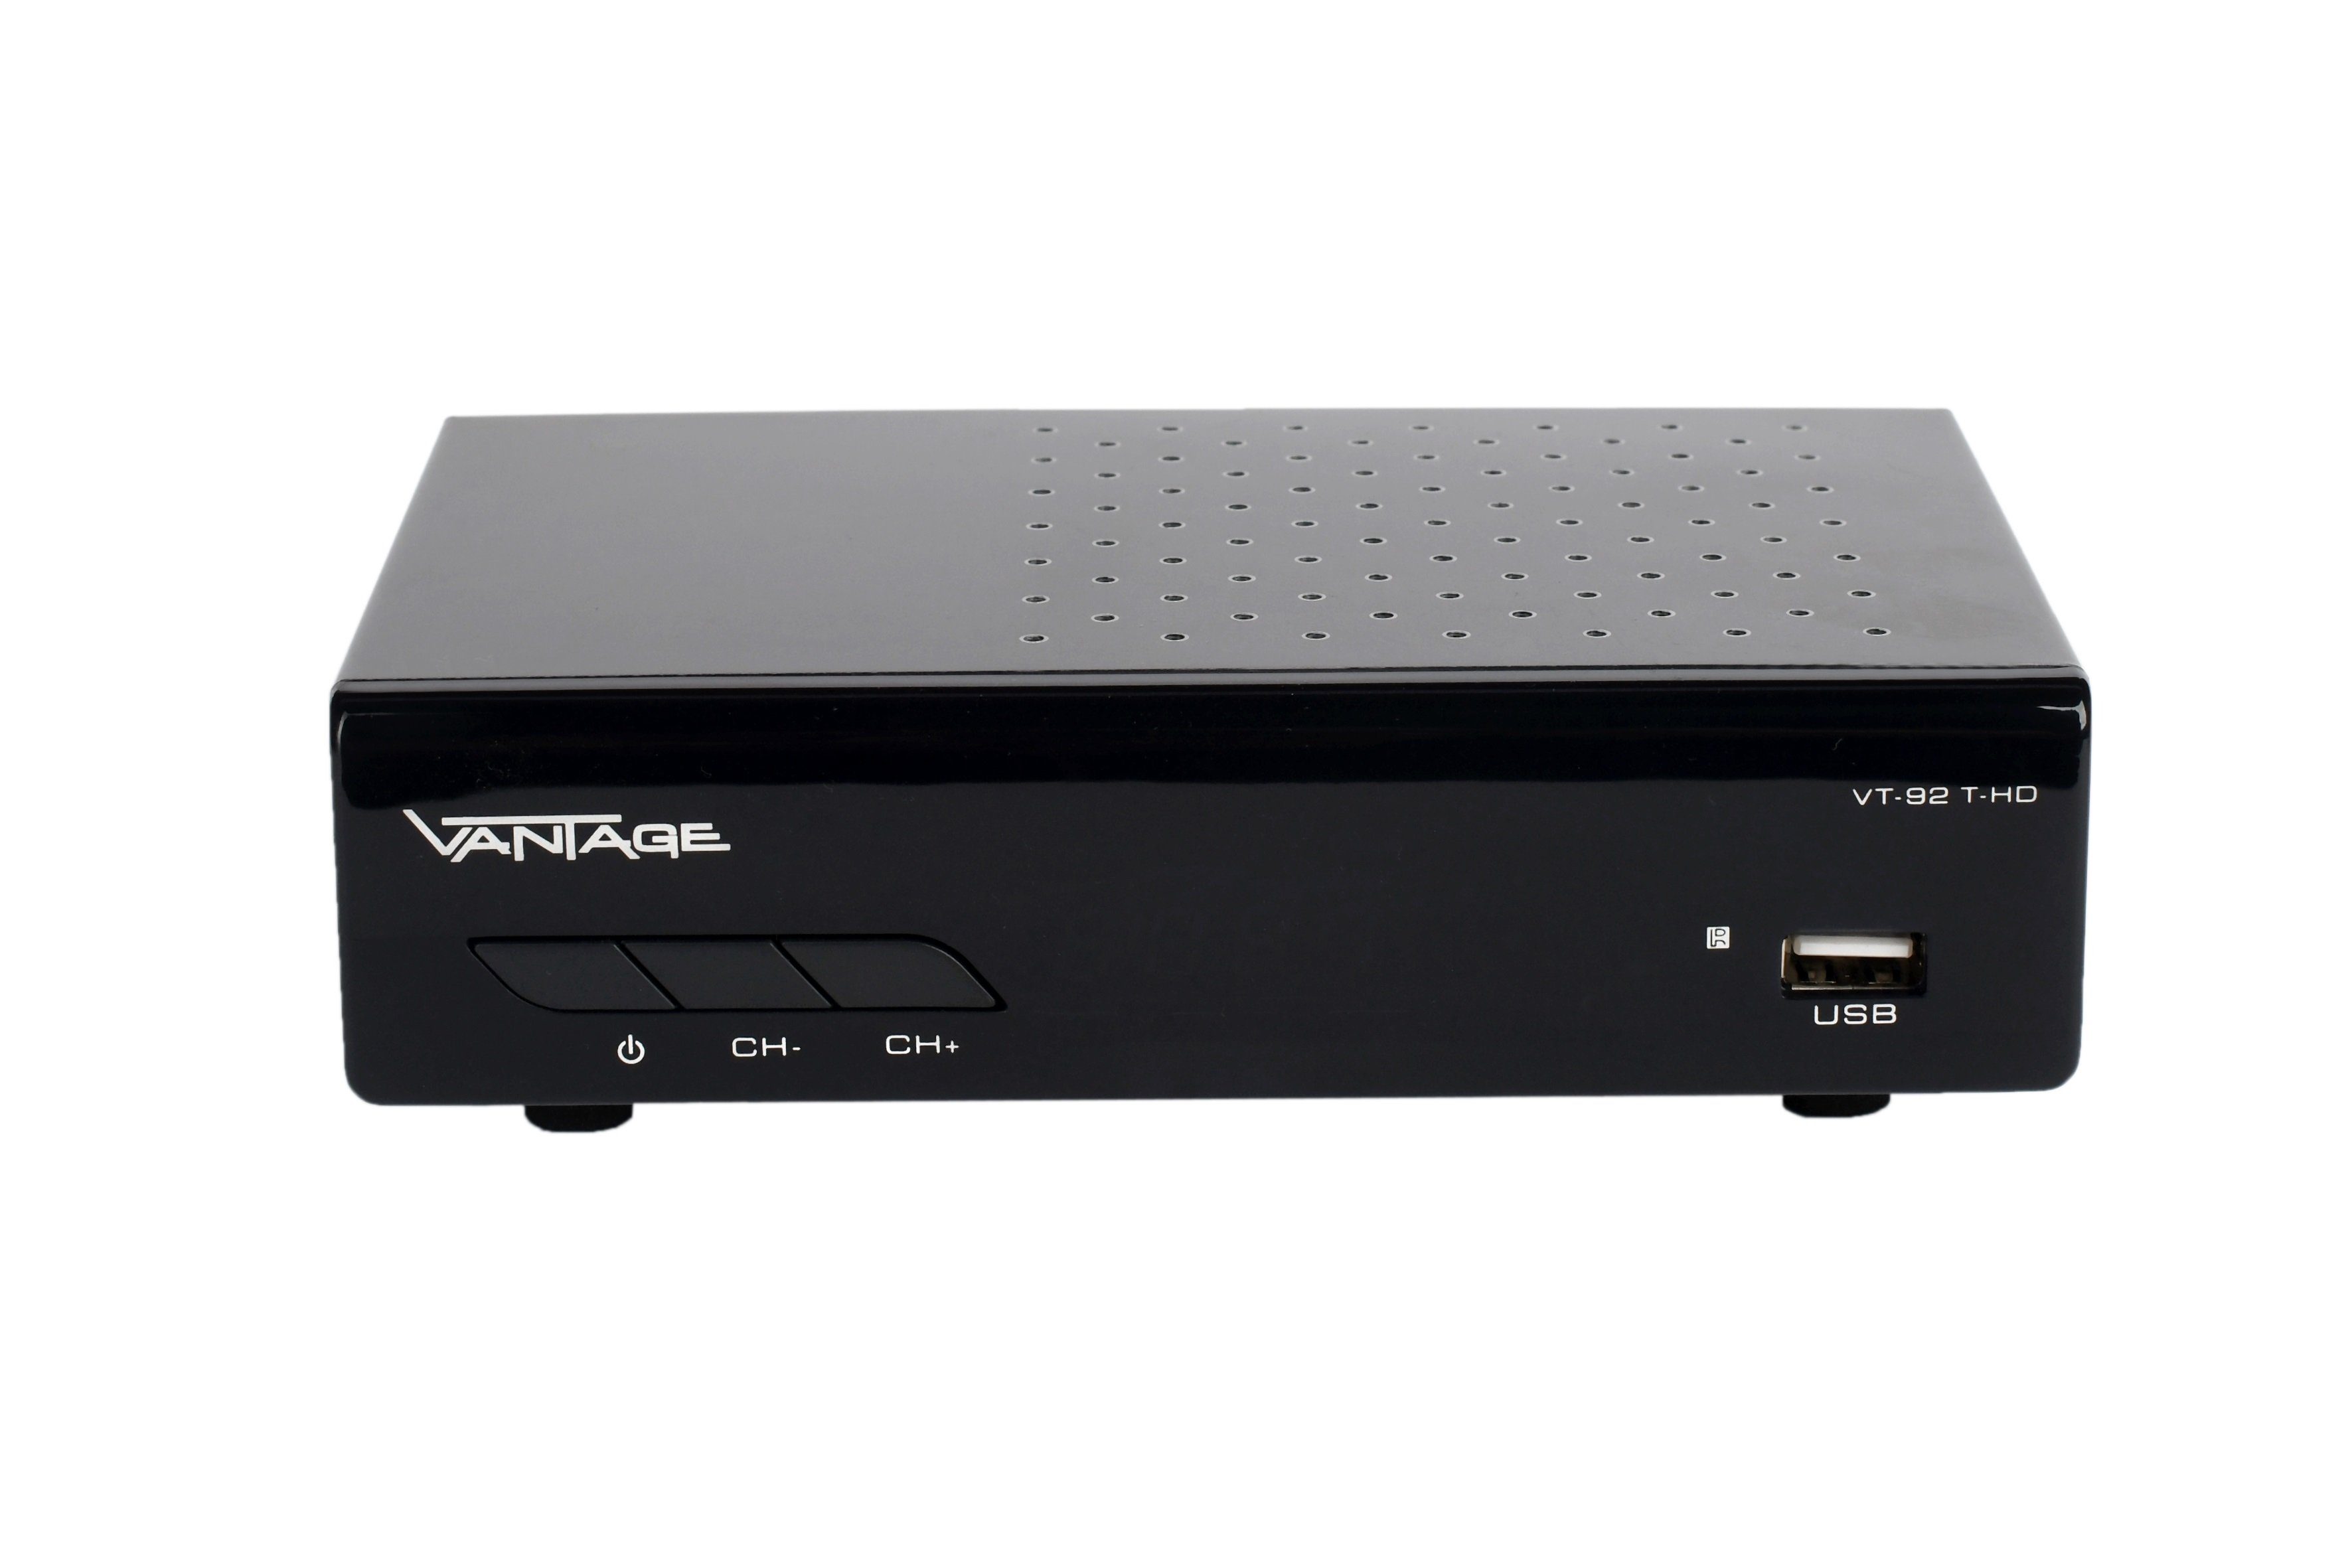 Vantage VT-92 DVB-T2 HD Receiver (1080p Full HDTV, USB, HDMI, SCART, Coaxial, 12 V)